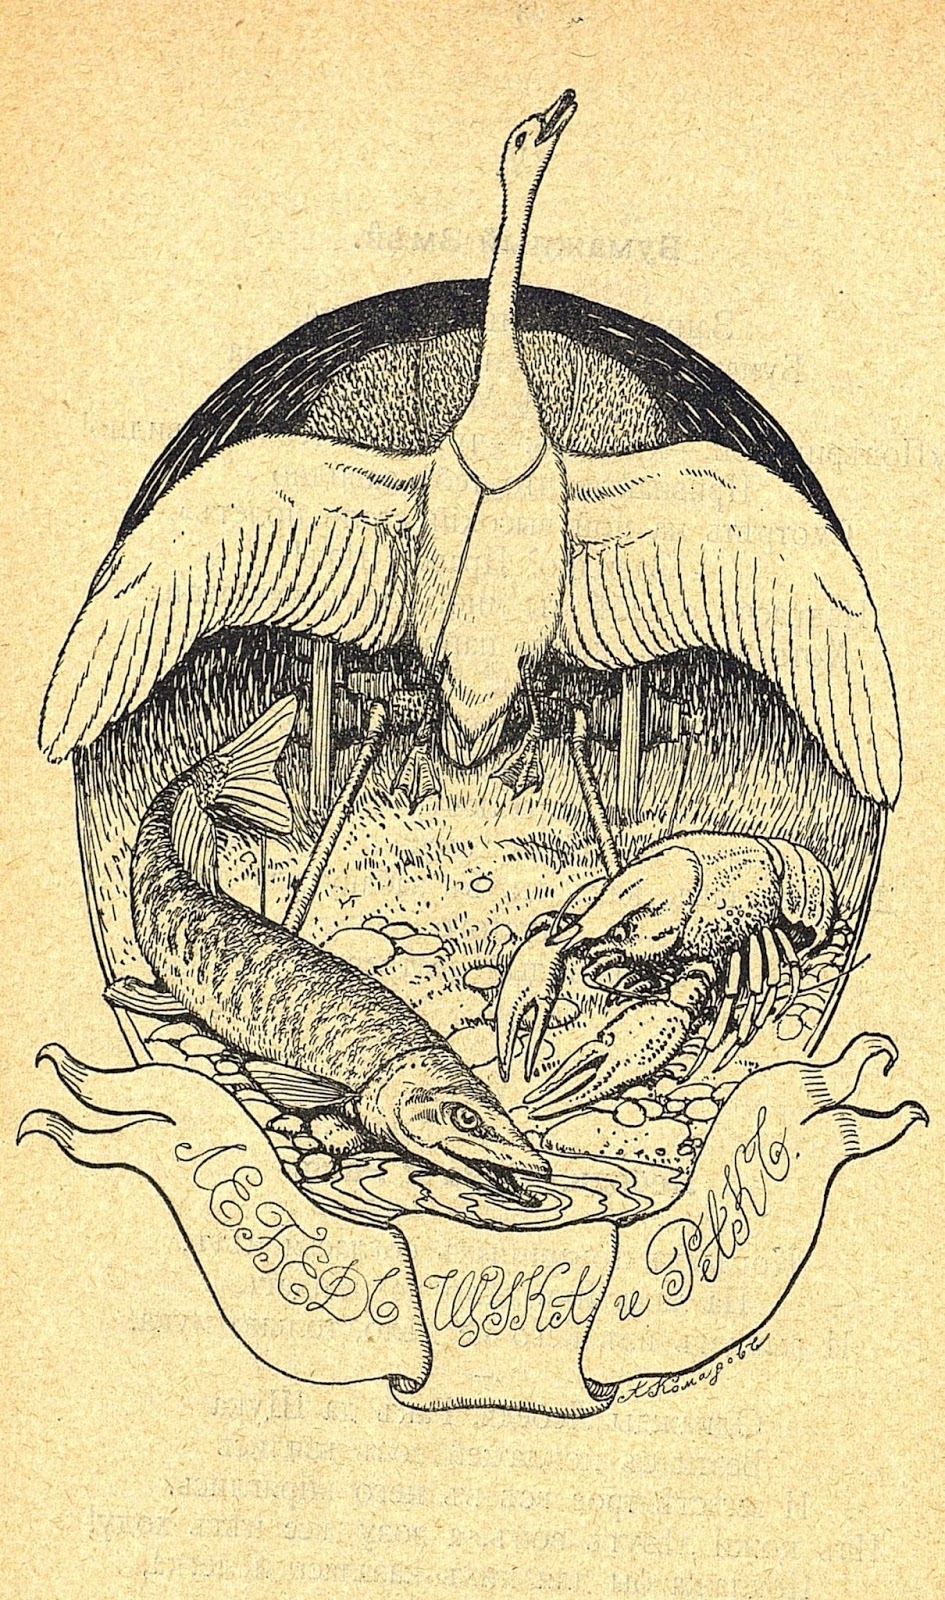 Иллюстрация к басне Крылова щука лебедь и краб